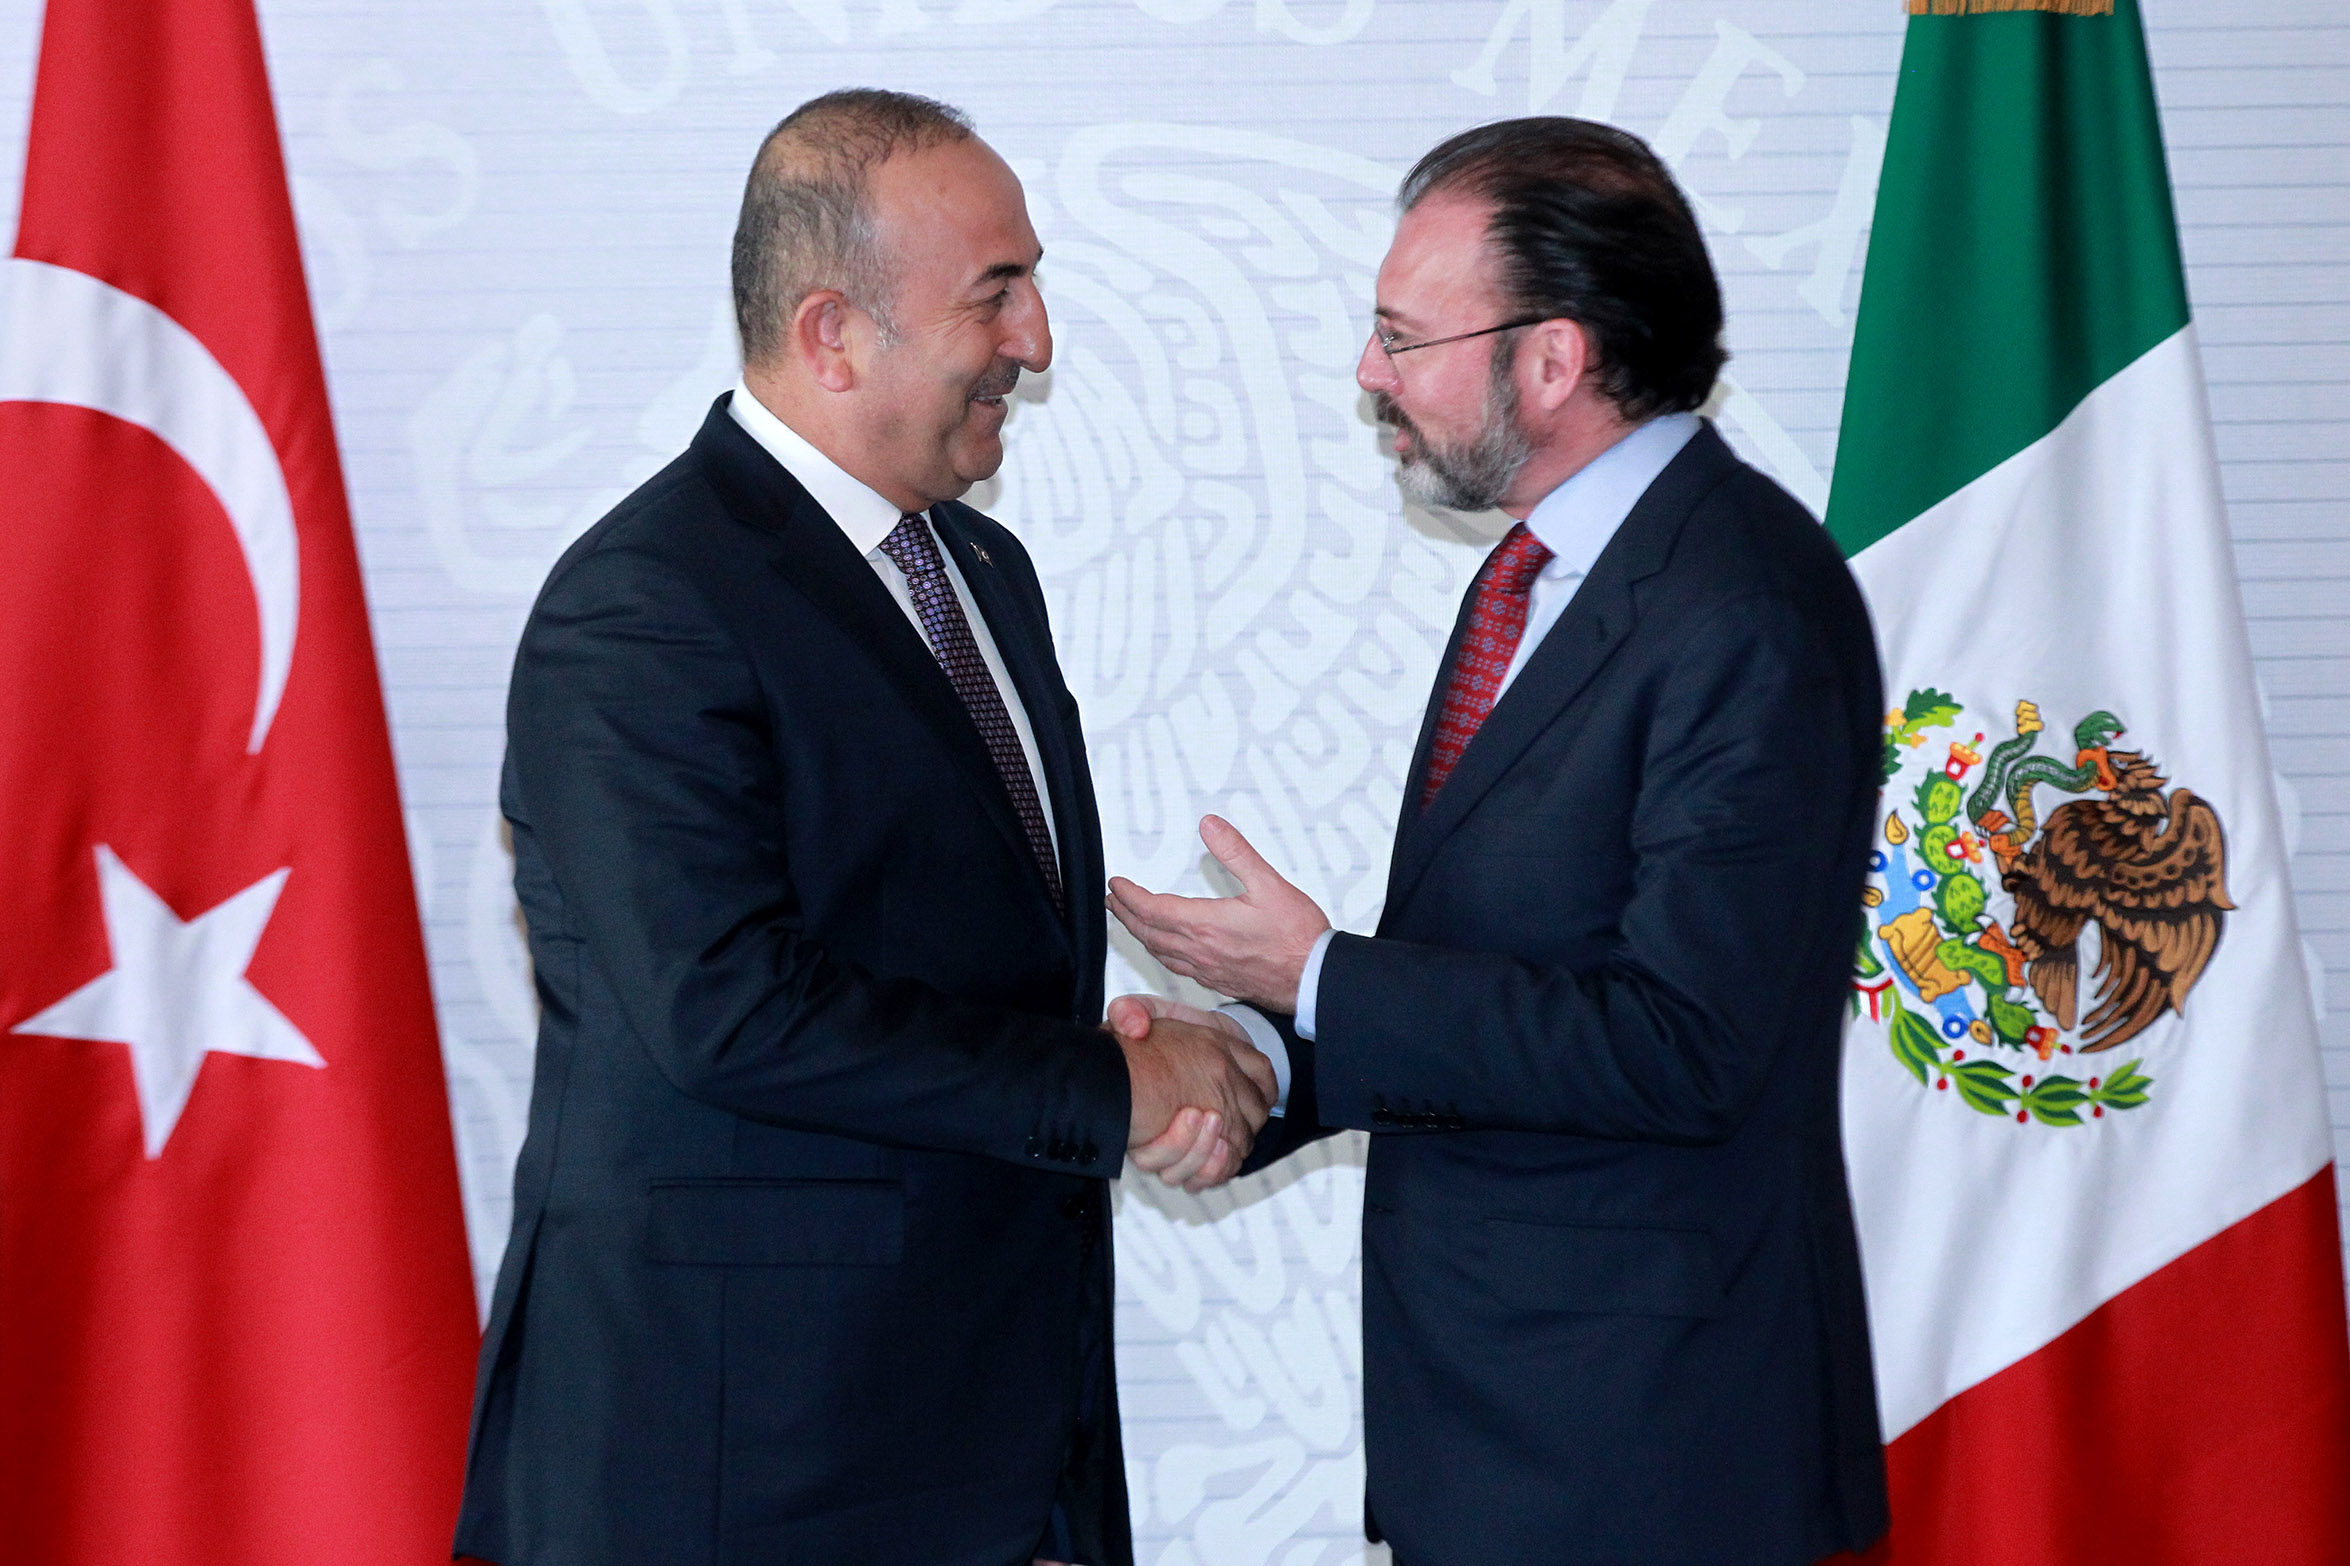 El canciller mexicano Luis Videgaray ofreció un mensaje conjunto con el primer ministro de asuntos exteriores de Turquía Mevlut Cavusoglu (Notimex)